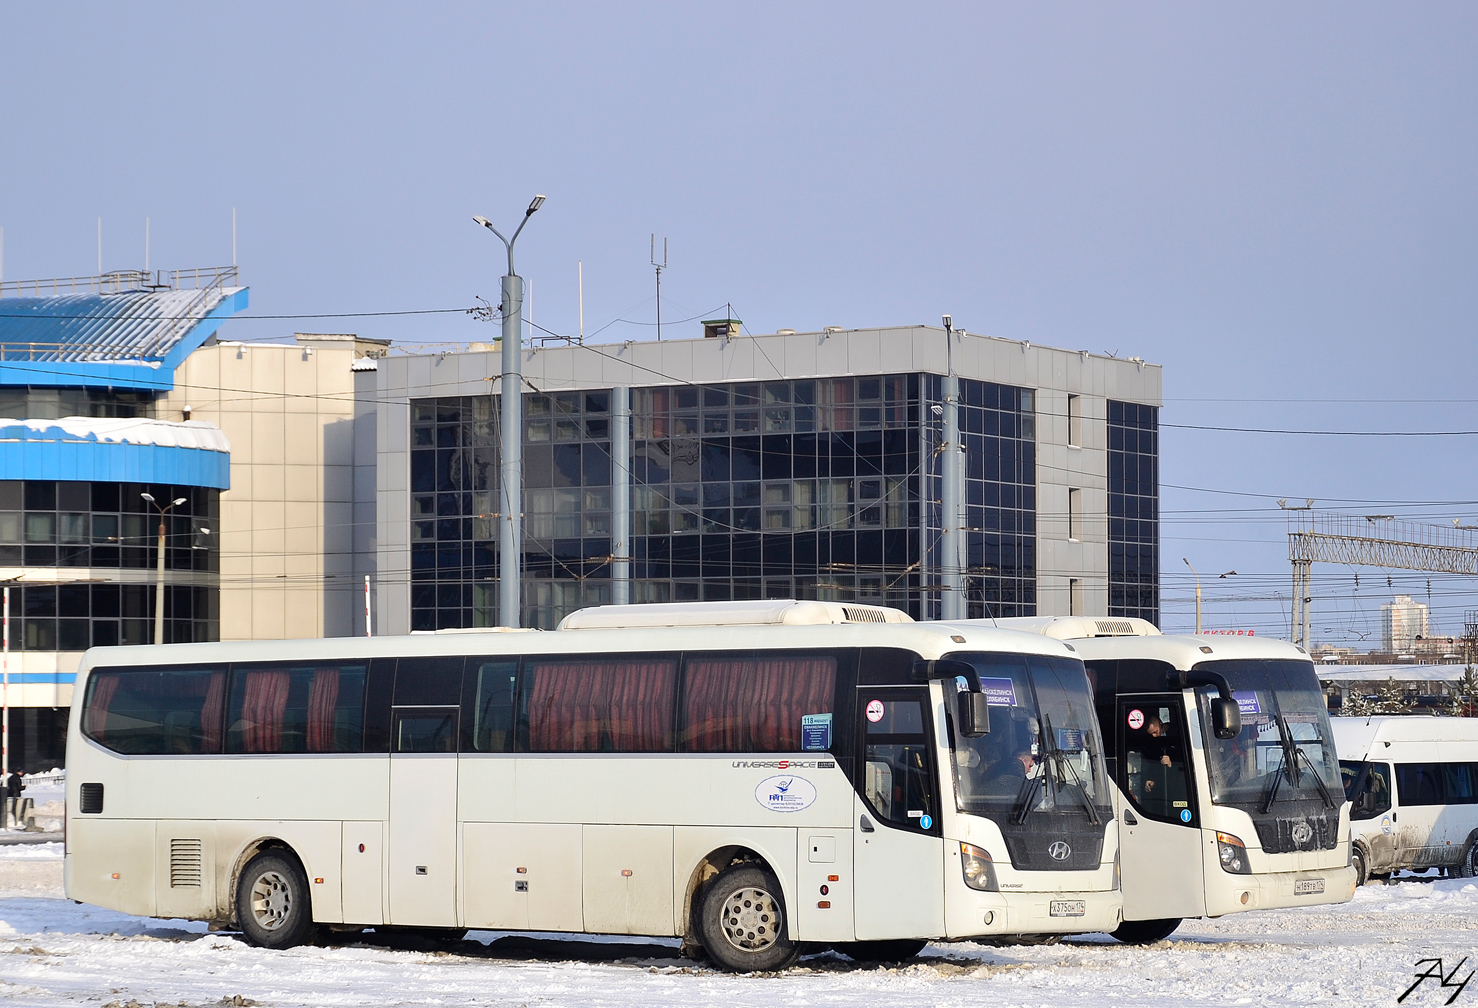 Челябинская область, Hyundai Universe Space Luxury № Х 375 ОН 174